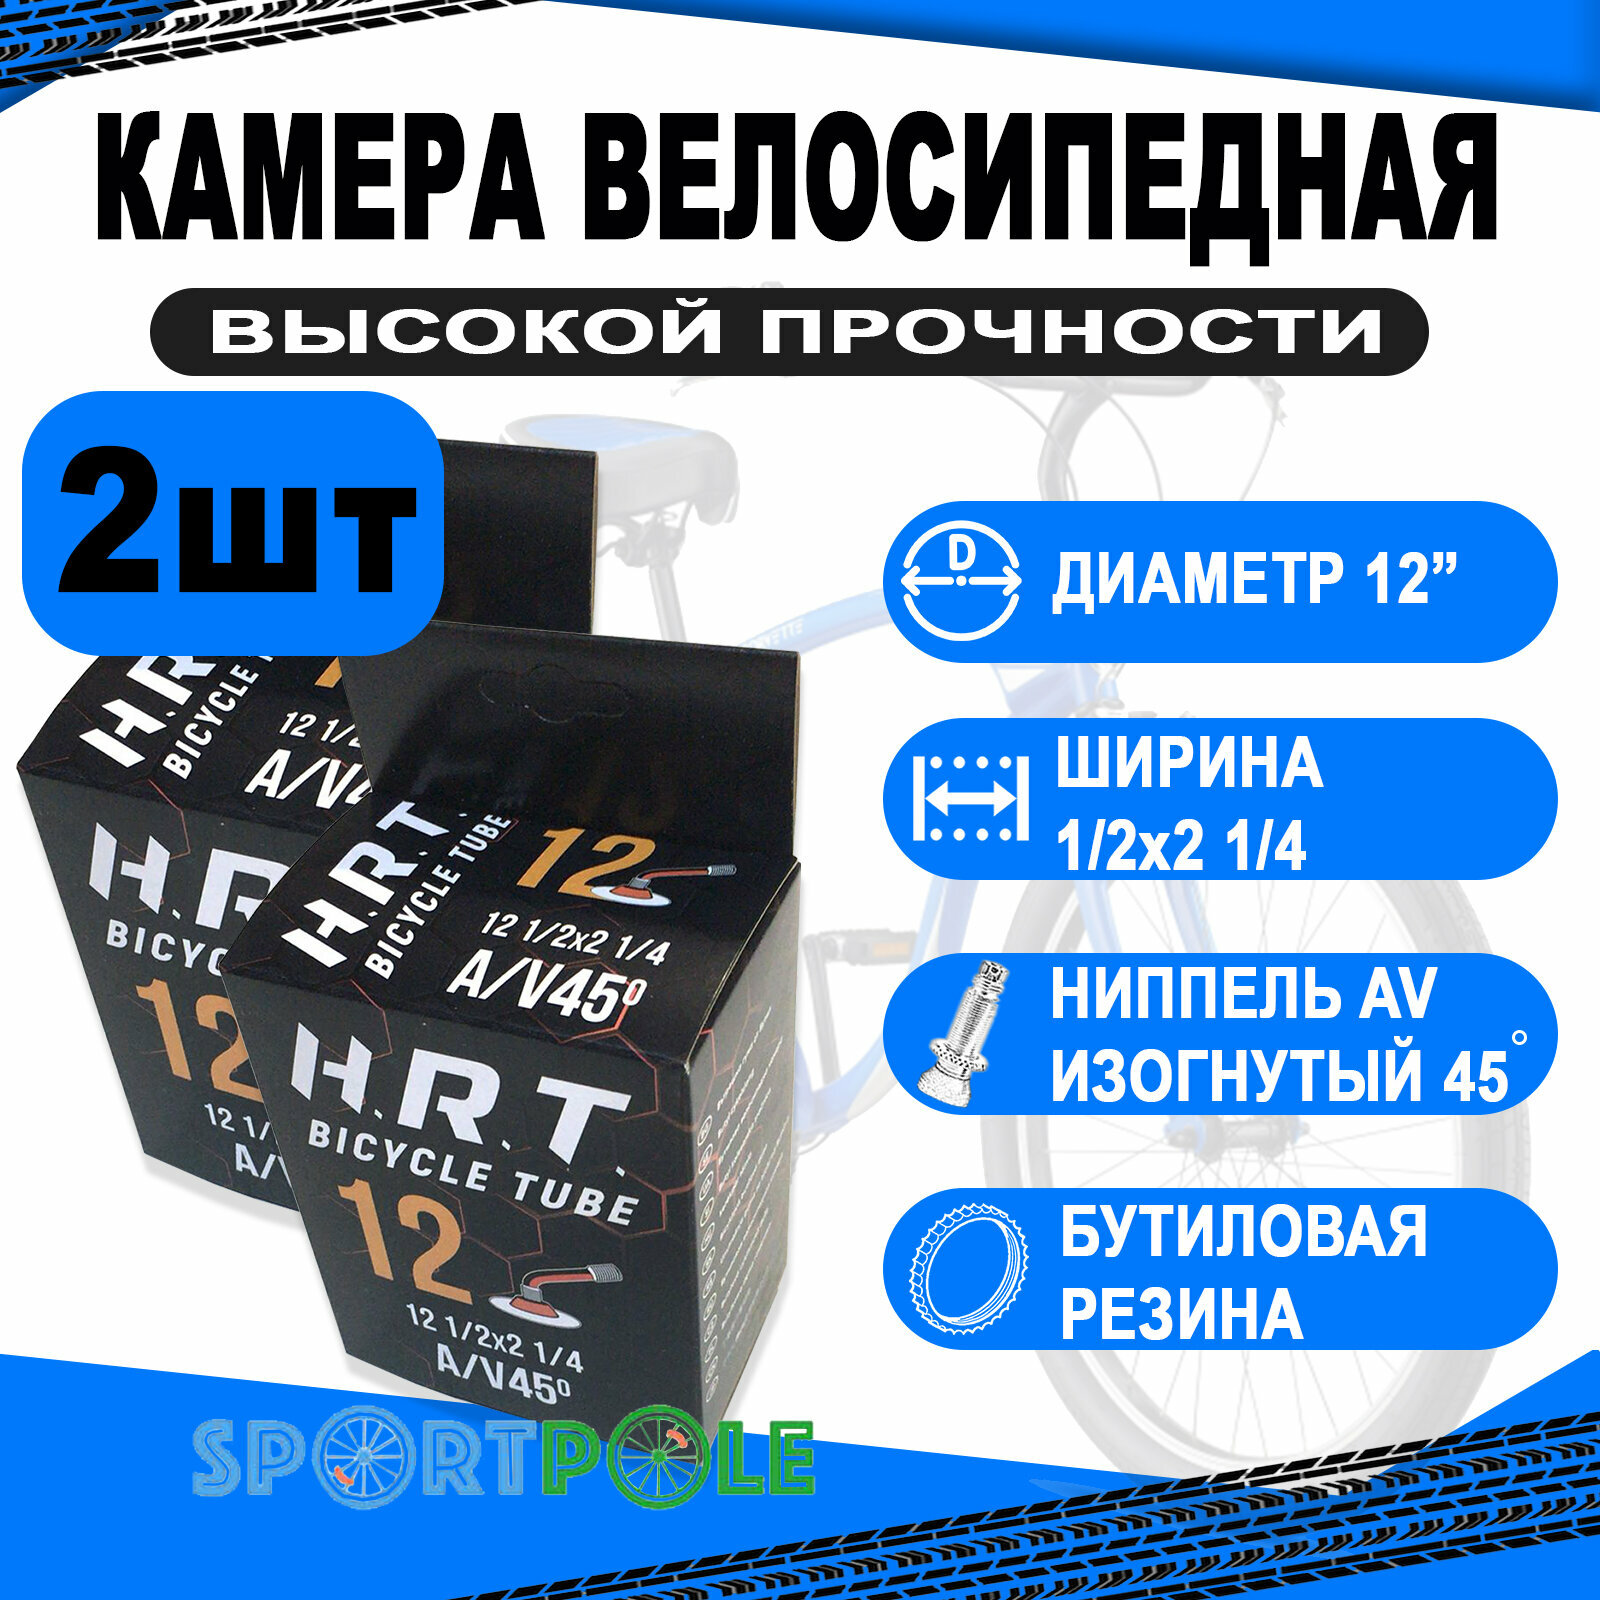 Комплект велокамер 2шт 12" авто 00-010013 изогн. 45` 1/2x2 1/4 велосипедная бутиловая (50) H.R.T.